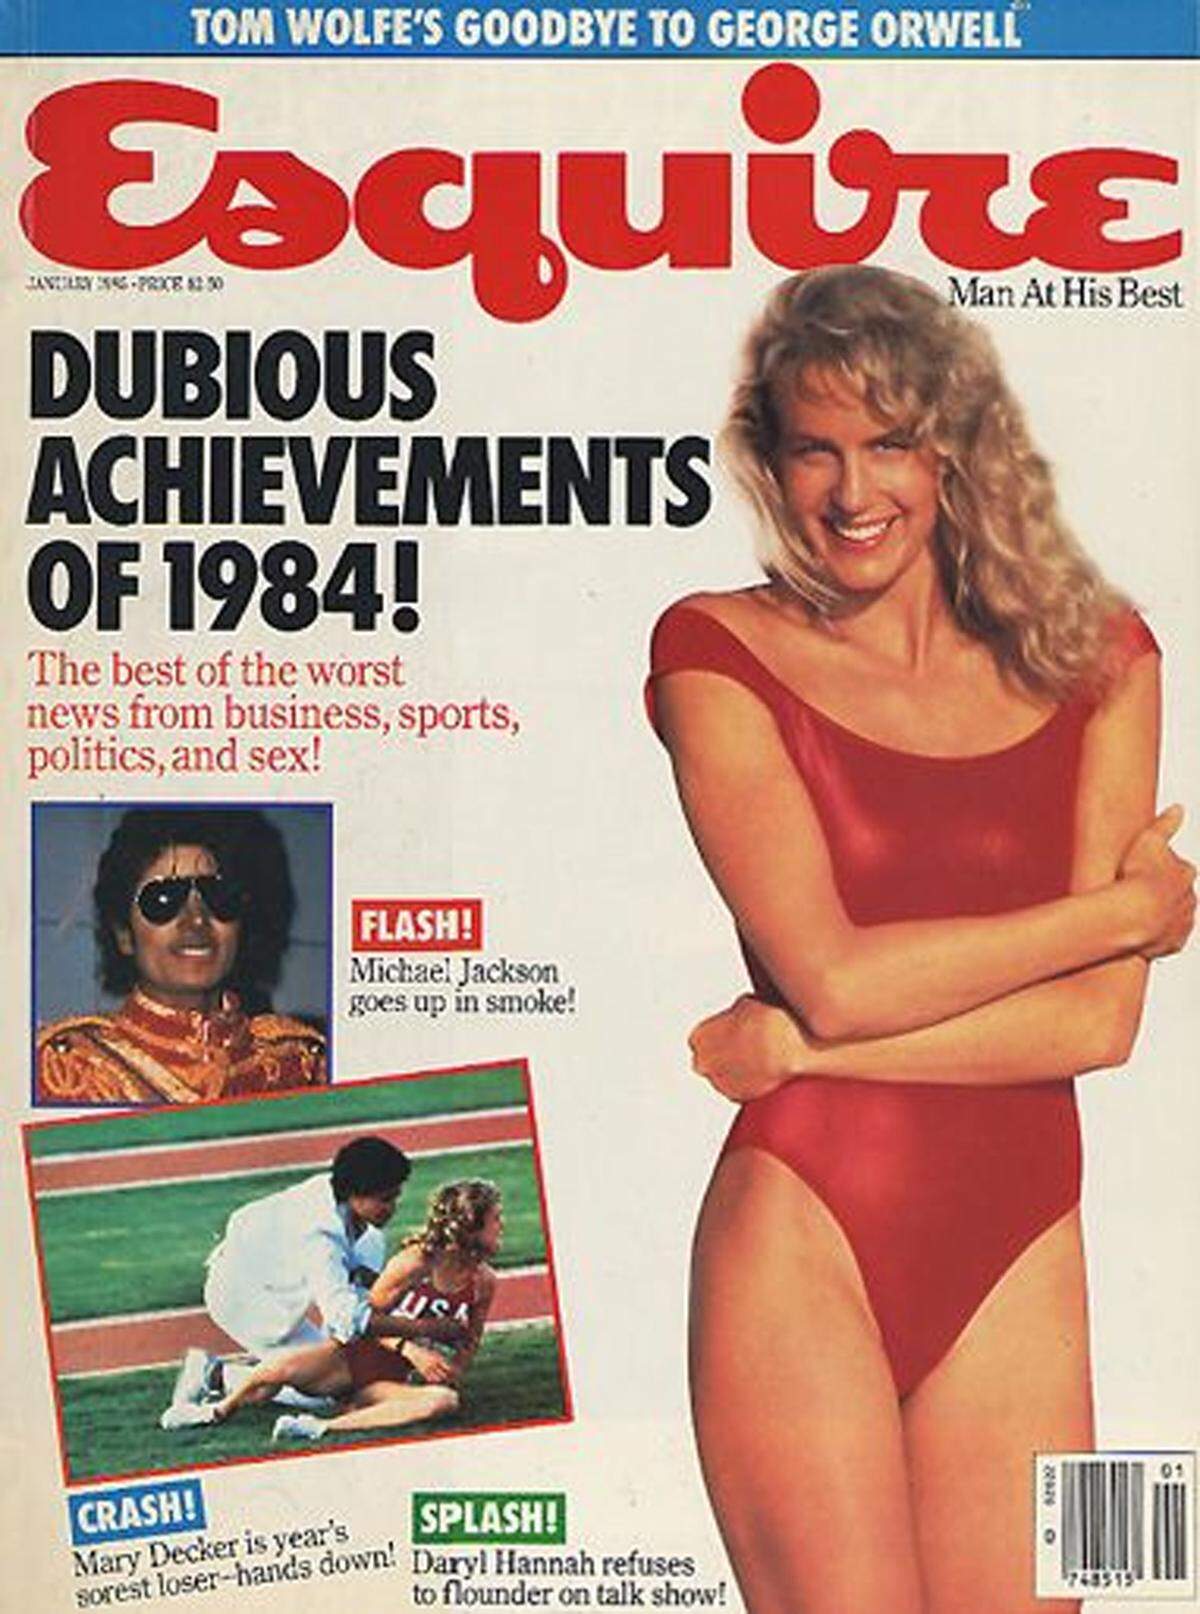 Vor 25 Jahren haben wir sie alle nackt gesehen. In der Liebeskomödie "Splash - Eine Jungfrau am Haken" verdrehte Daryl Hannah als Meeresnixe nicht nur Tom Hanks den Kopf. Sie wurde als Neuentdeckung Hollywoods gefeiert. Am 3. Dezember feiert sie ihren 50. Geburtstag."Esquire"-Cover aus dem Jahr 1985